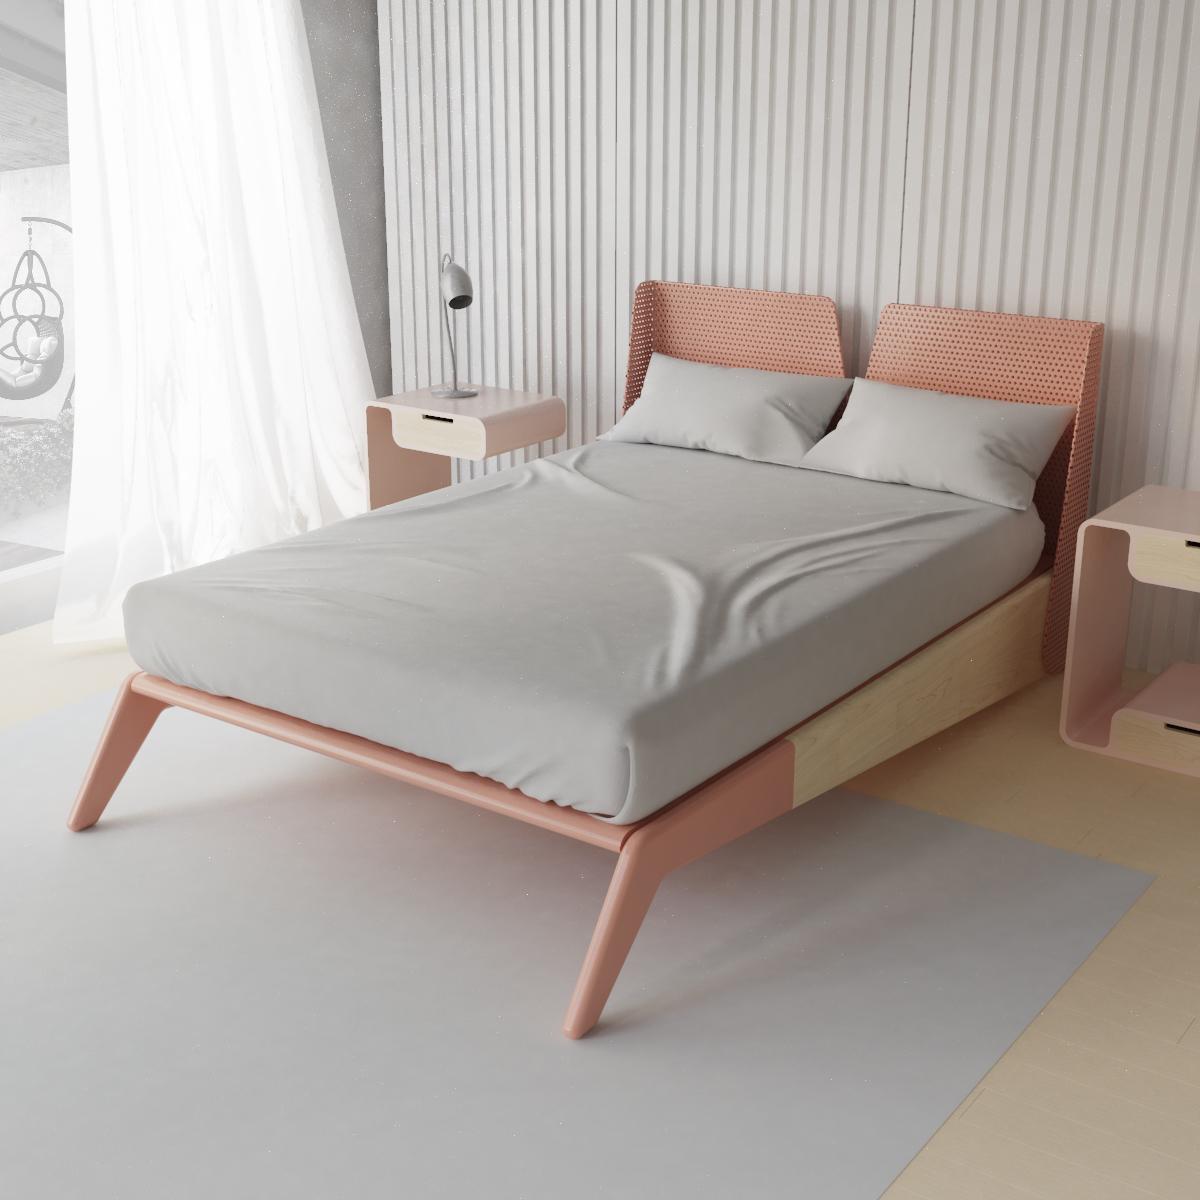 mid century modern queen bed